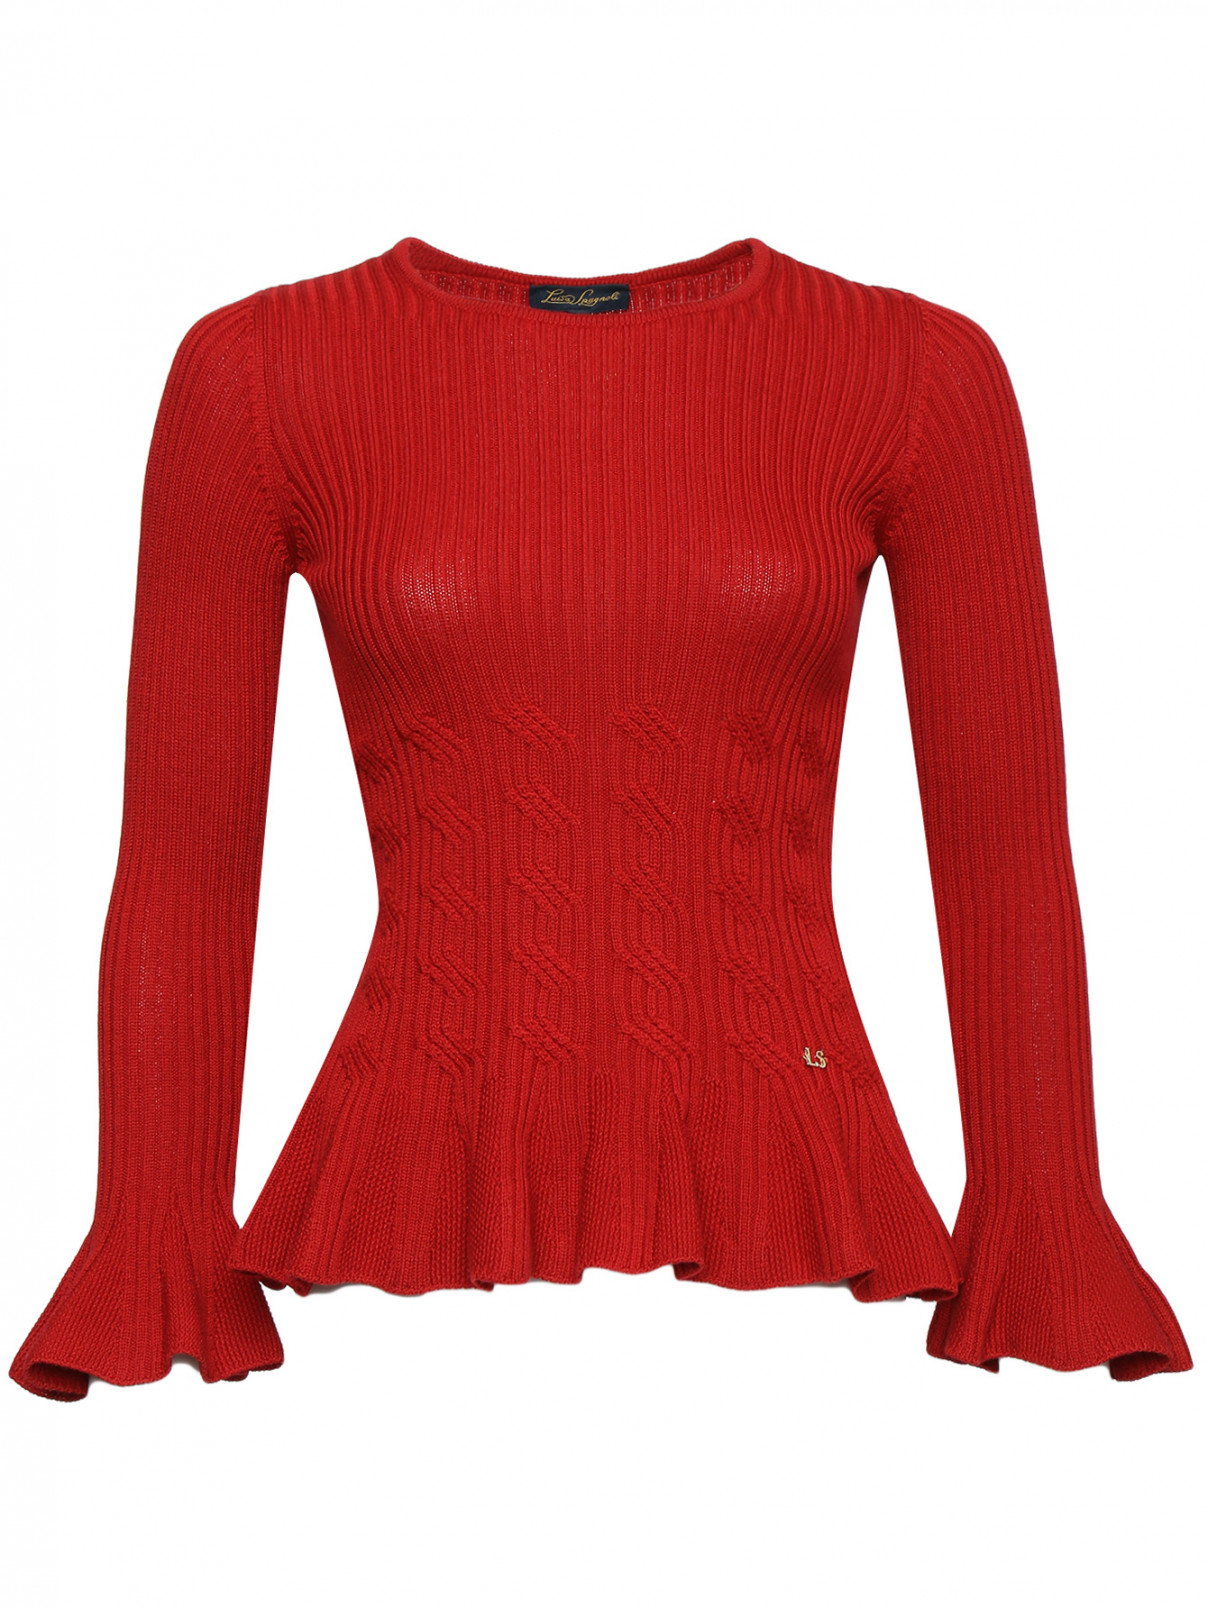 Джемпер из шерсти с круглым вырезом Luisa Spagnoli  –  Общий вид  – Цвет:  Красный